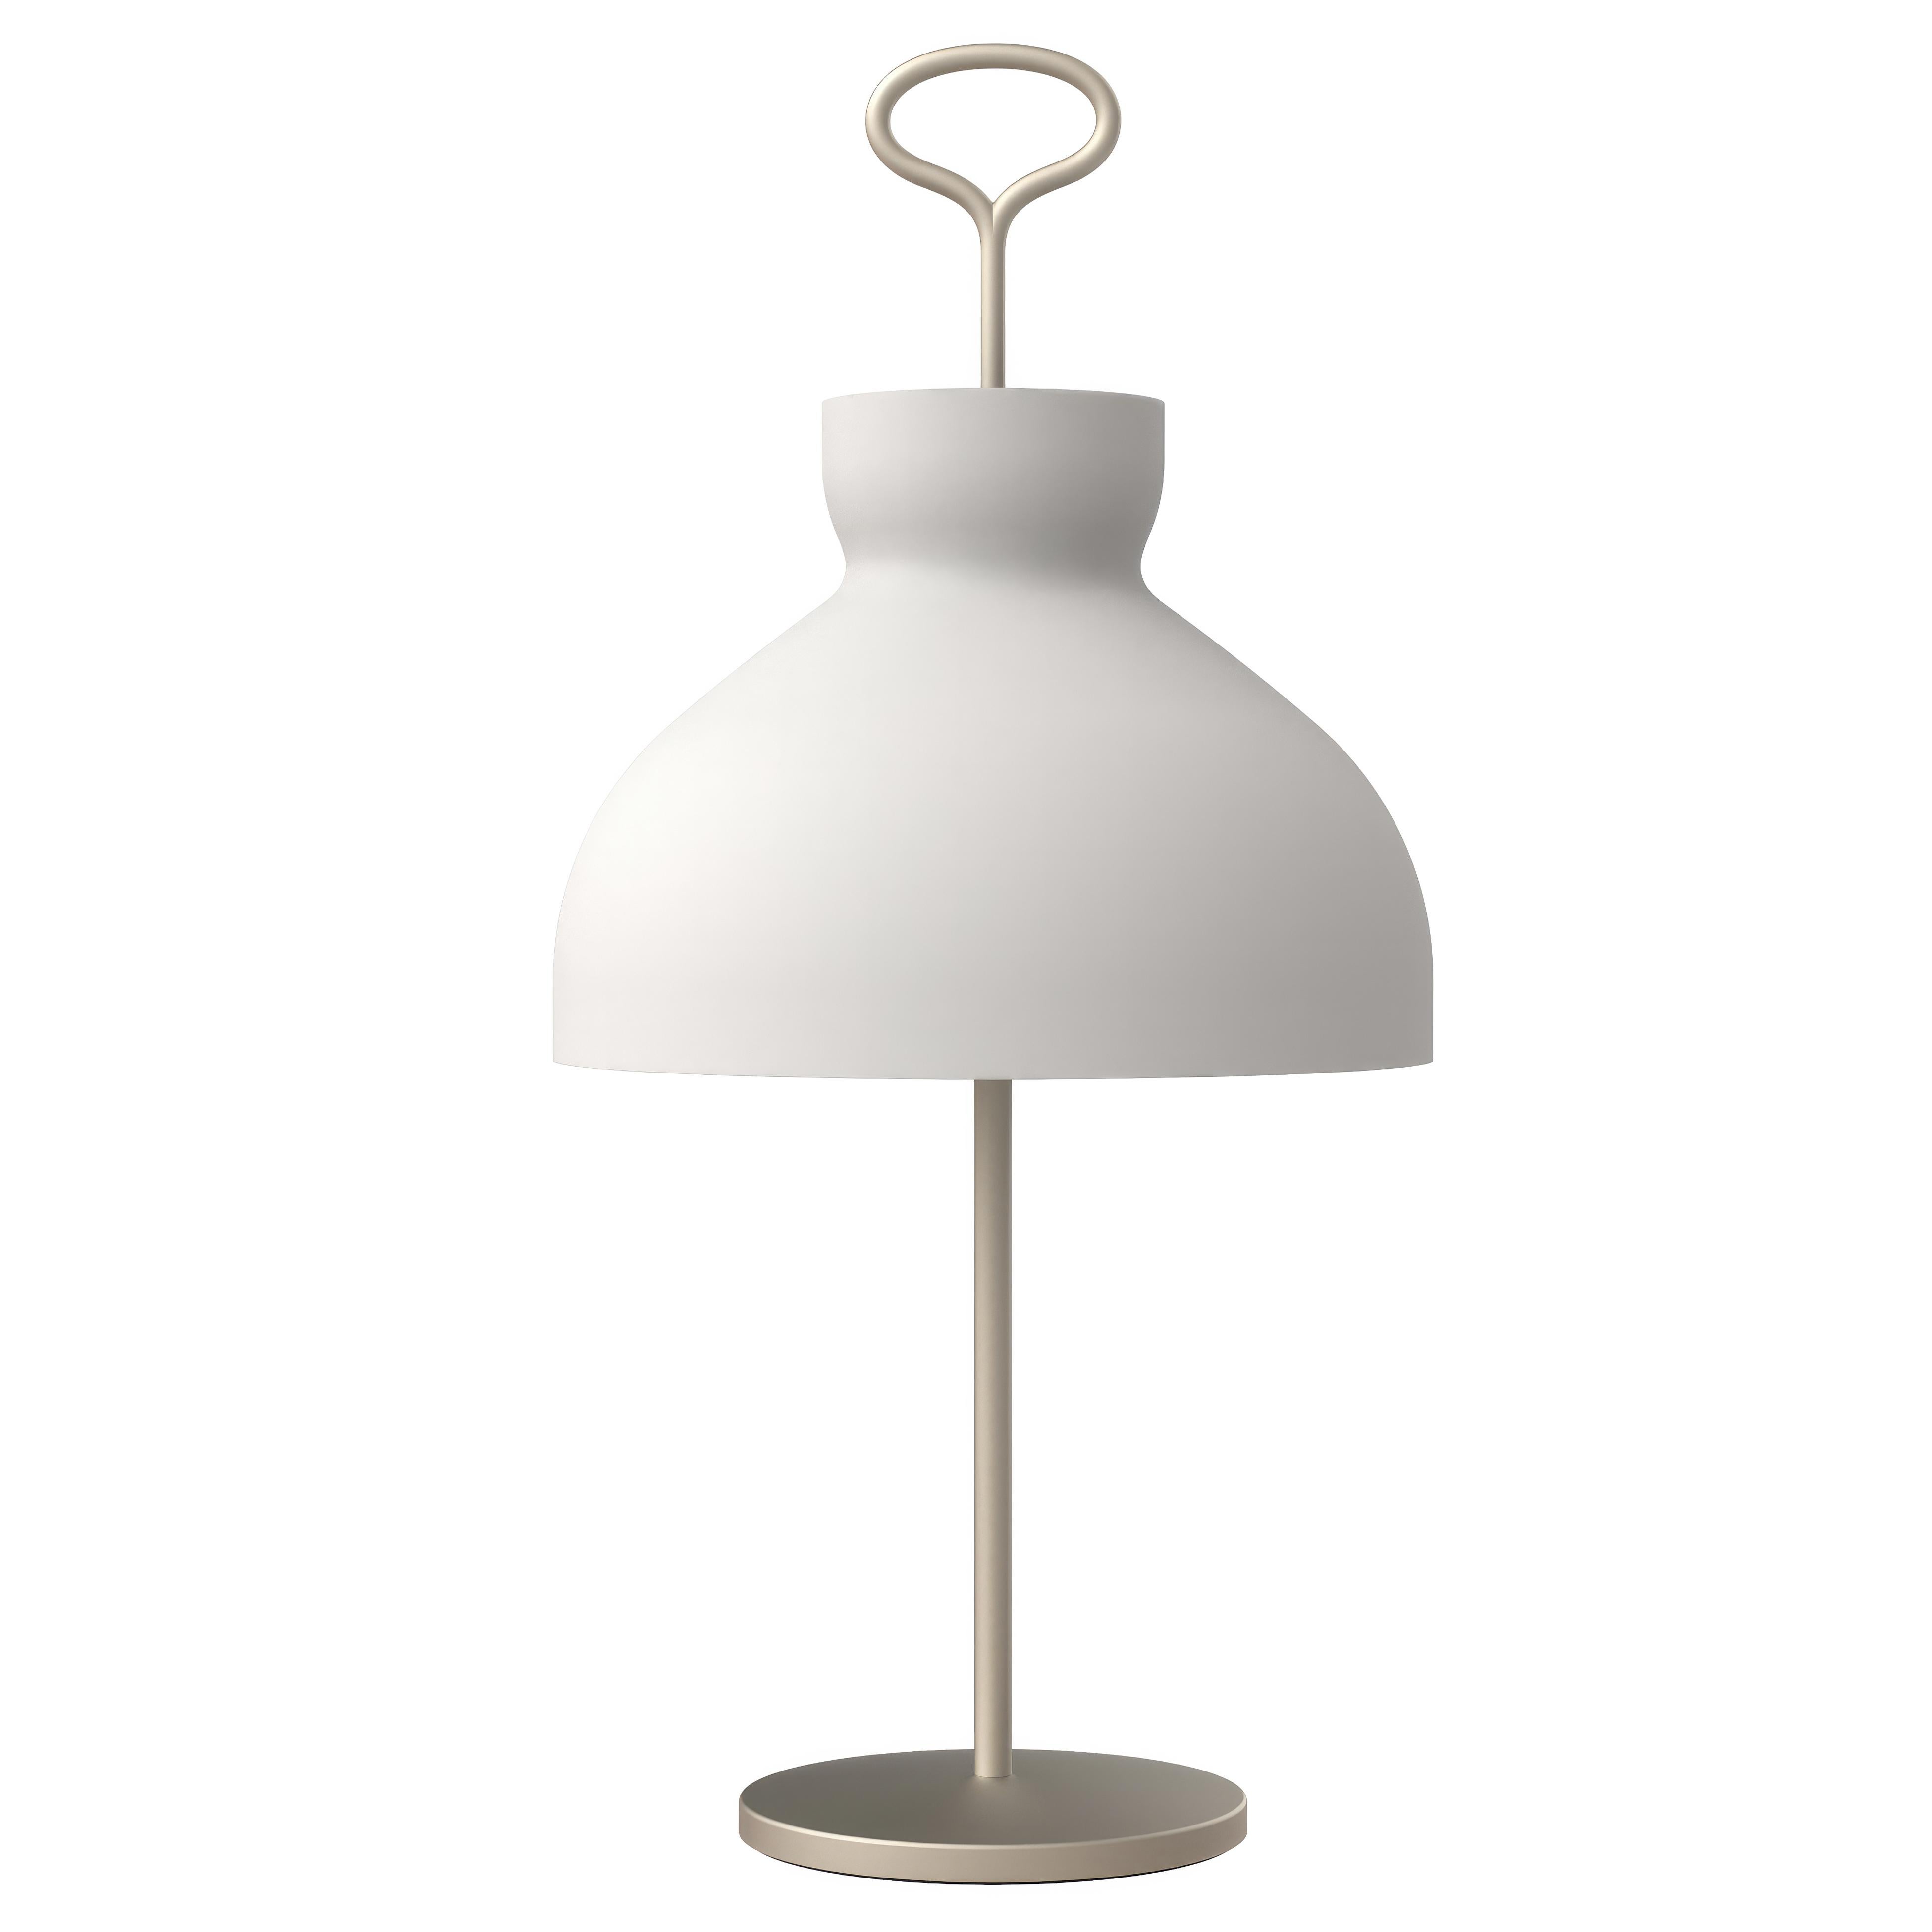 Large Ignazio Gardella 'Arenzano' Table Lamp in Chrome and Glass for Tato Italia For Sale 3